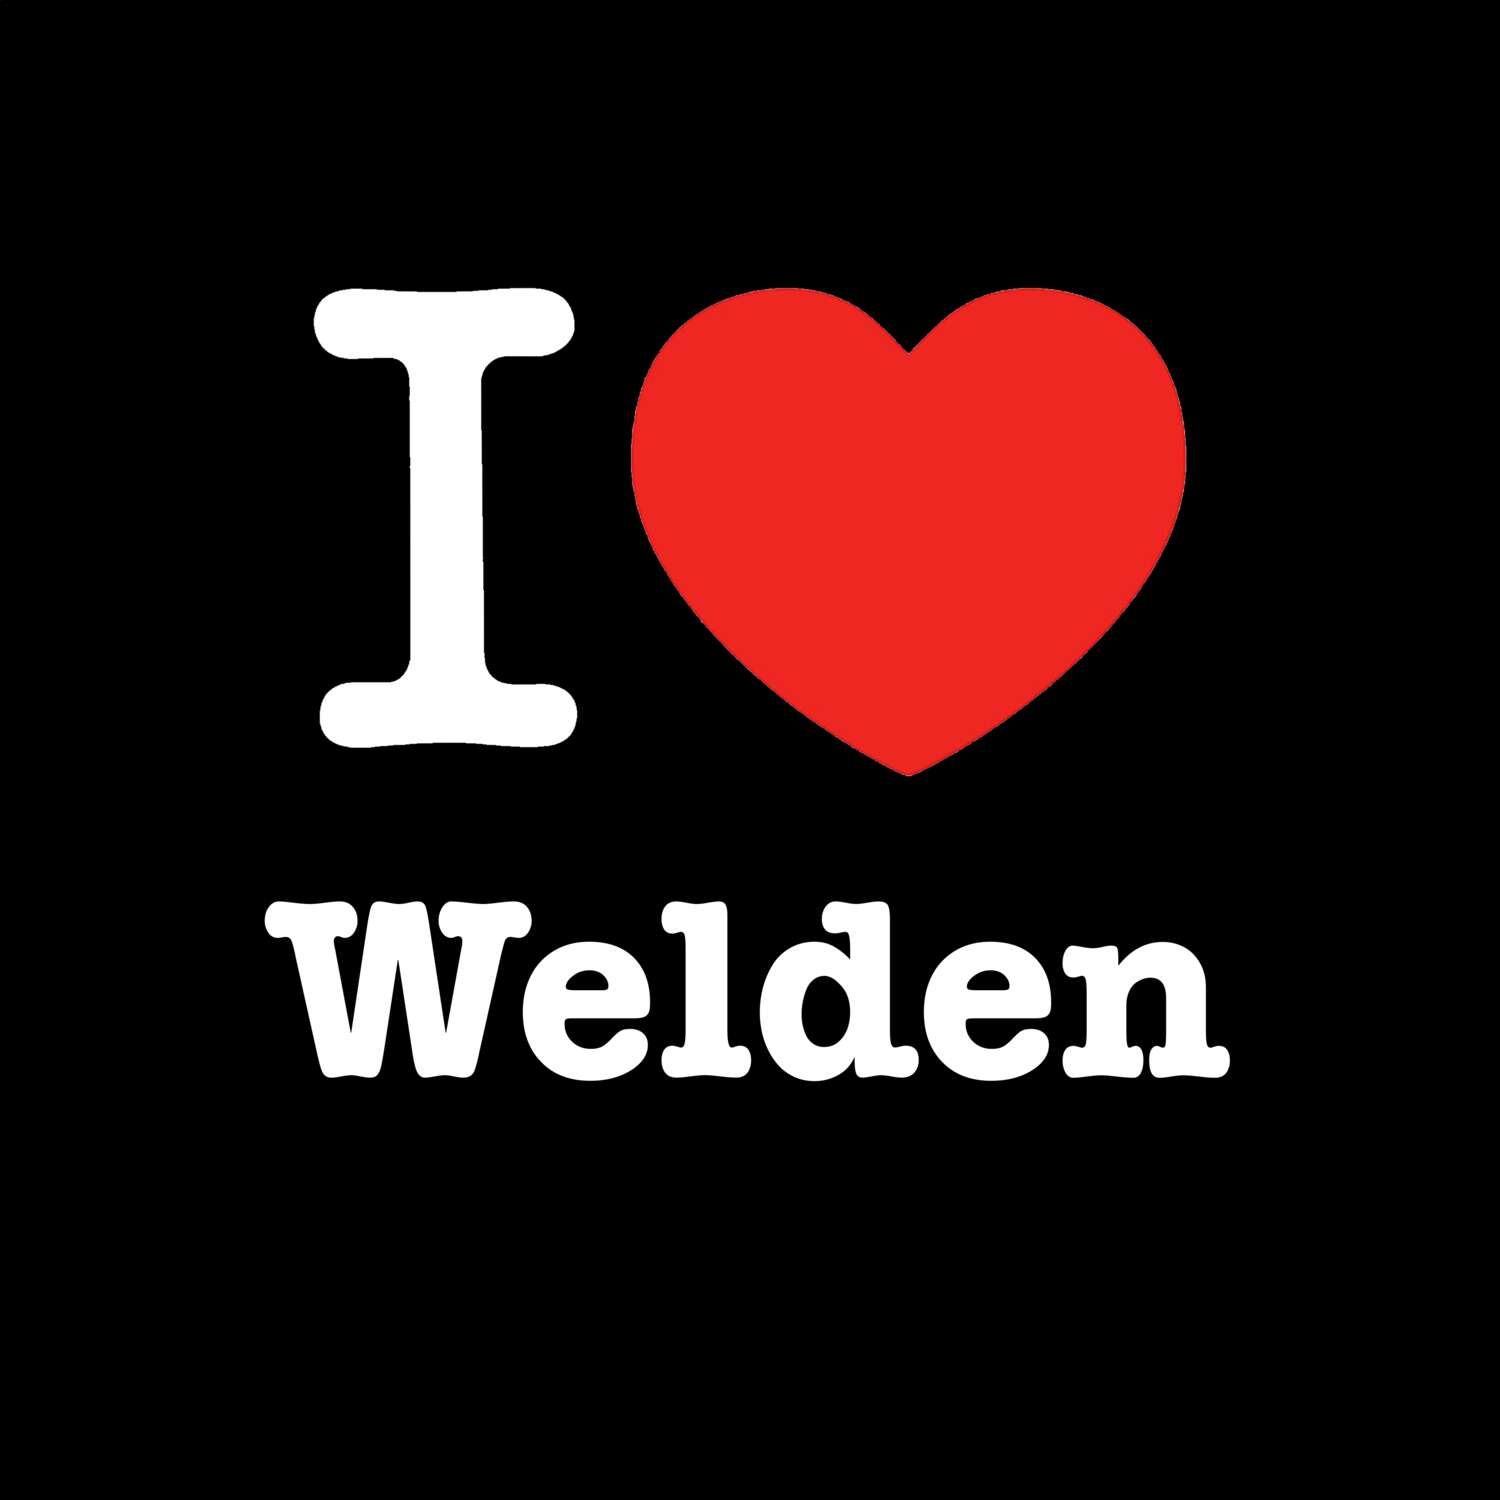 Welden T-Shirt »I love«